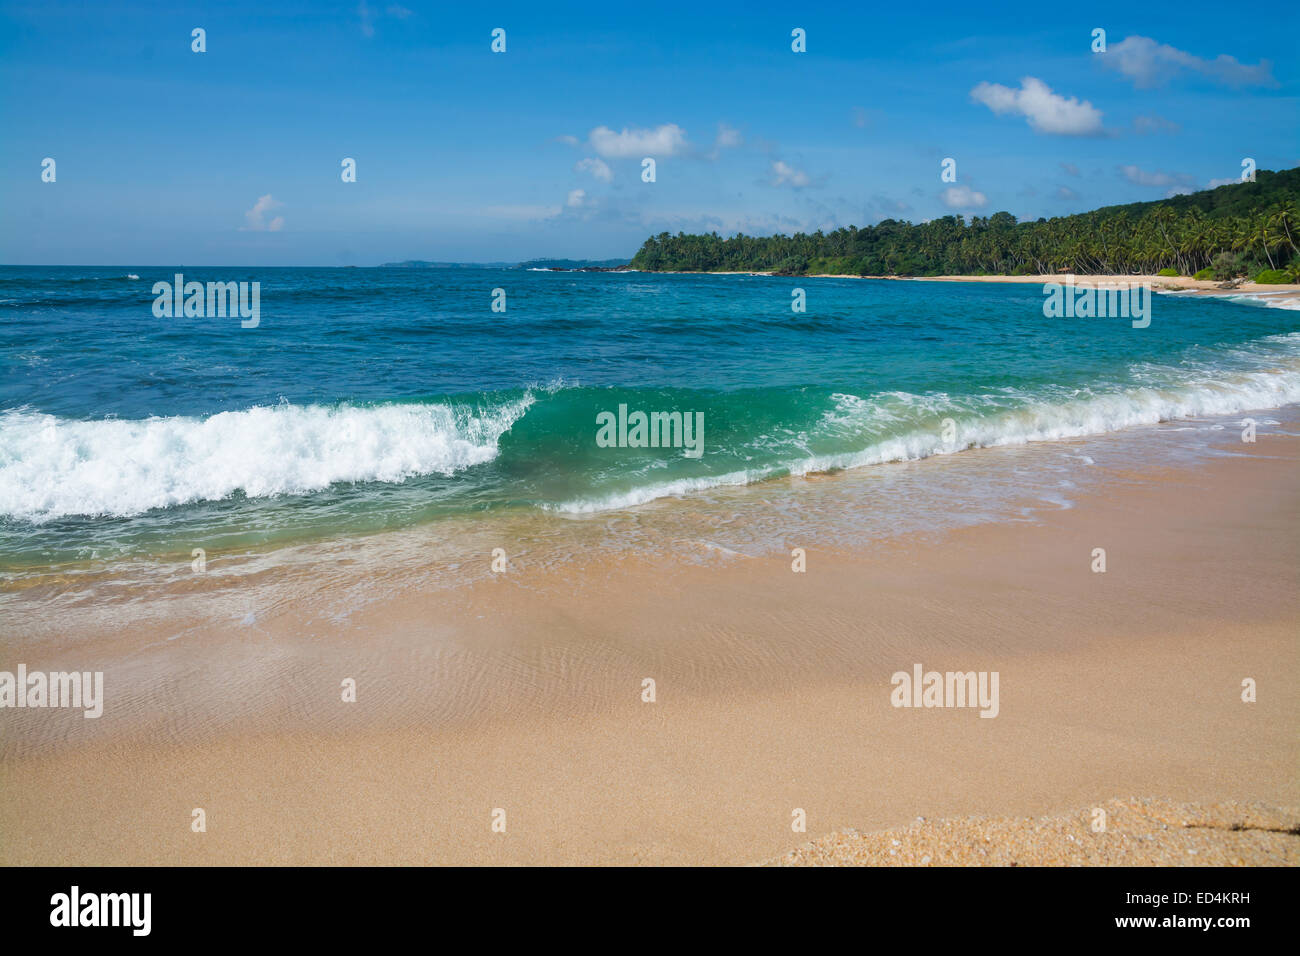 Grüne Welle auf Sandparadies Strand mit Palmen, goldenen Sand und Smaragd grünes Wasser am Rande des Indischen Ozeans, Sri Lanka Stockfoto